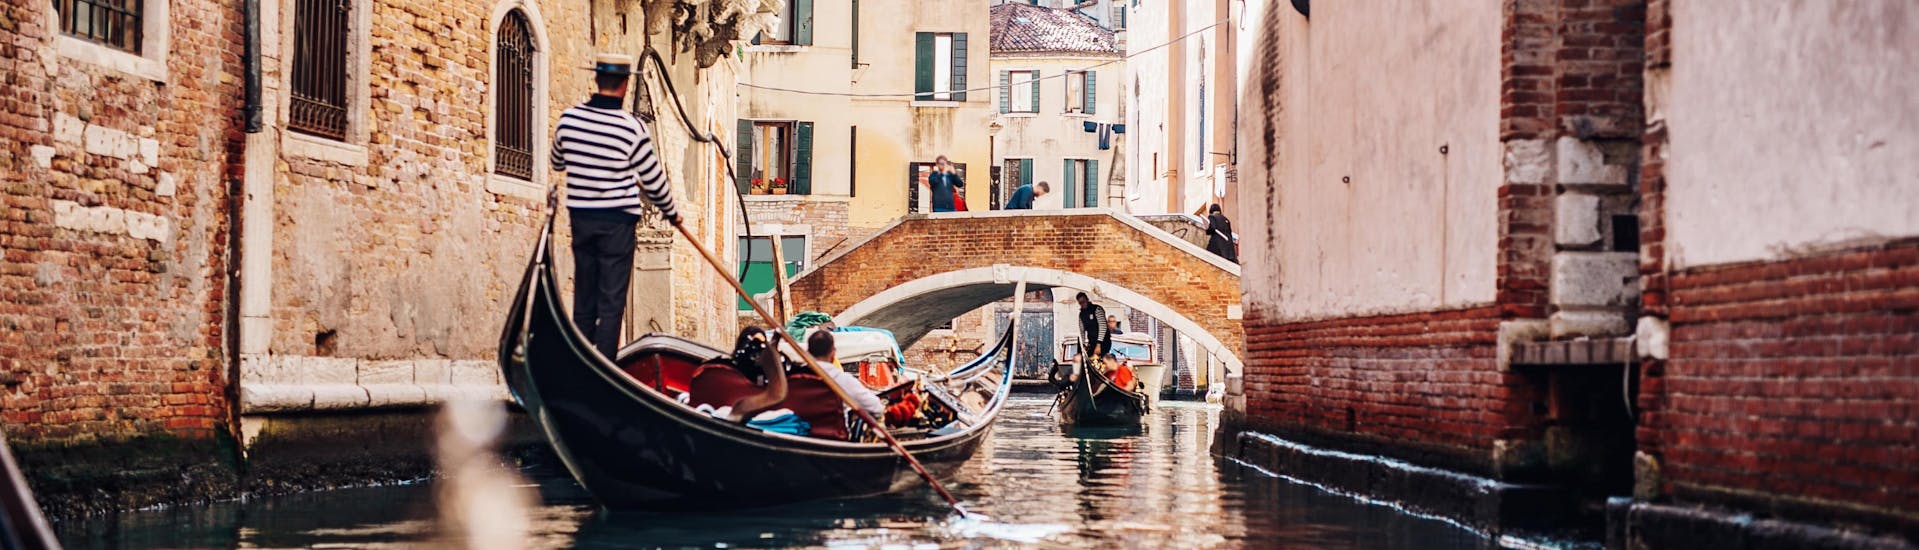 Een gondelier peddelt door een smal kanaal tijdens een gondelvaart in Venetië.